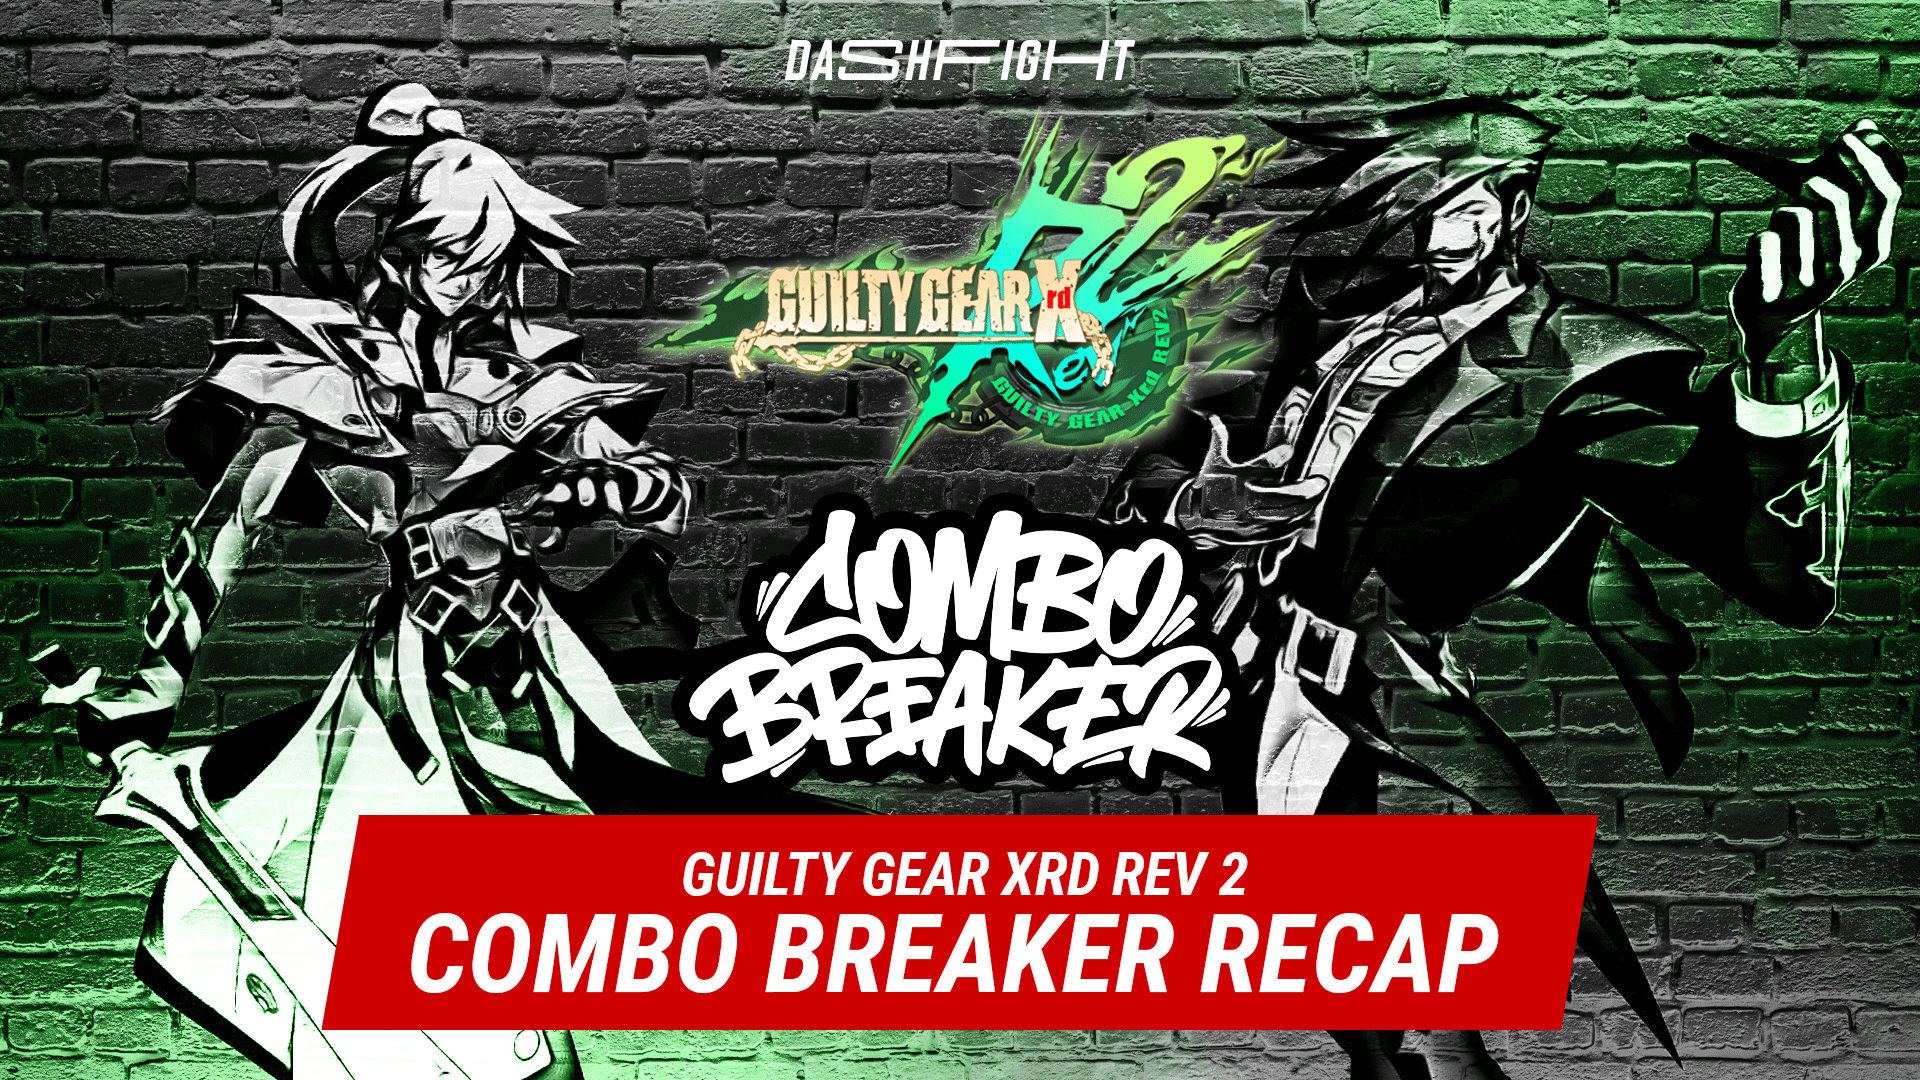 Combo Breaker 2023 Guilty Gear Xrd Rev 2 Recap DashFight